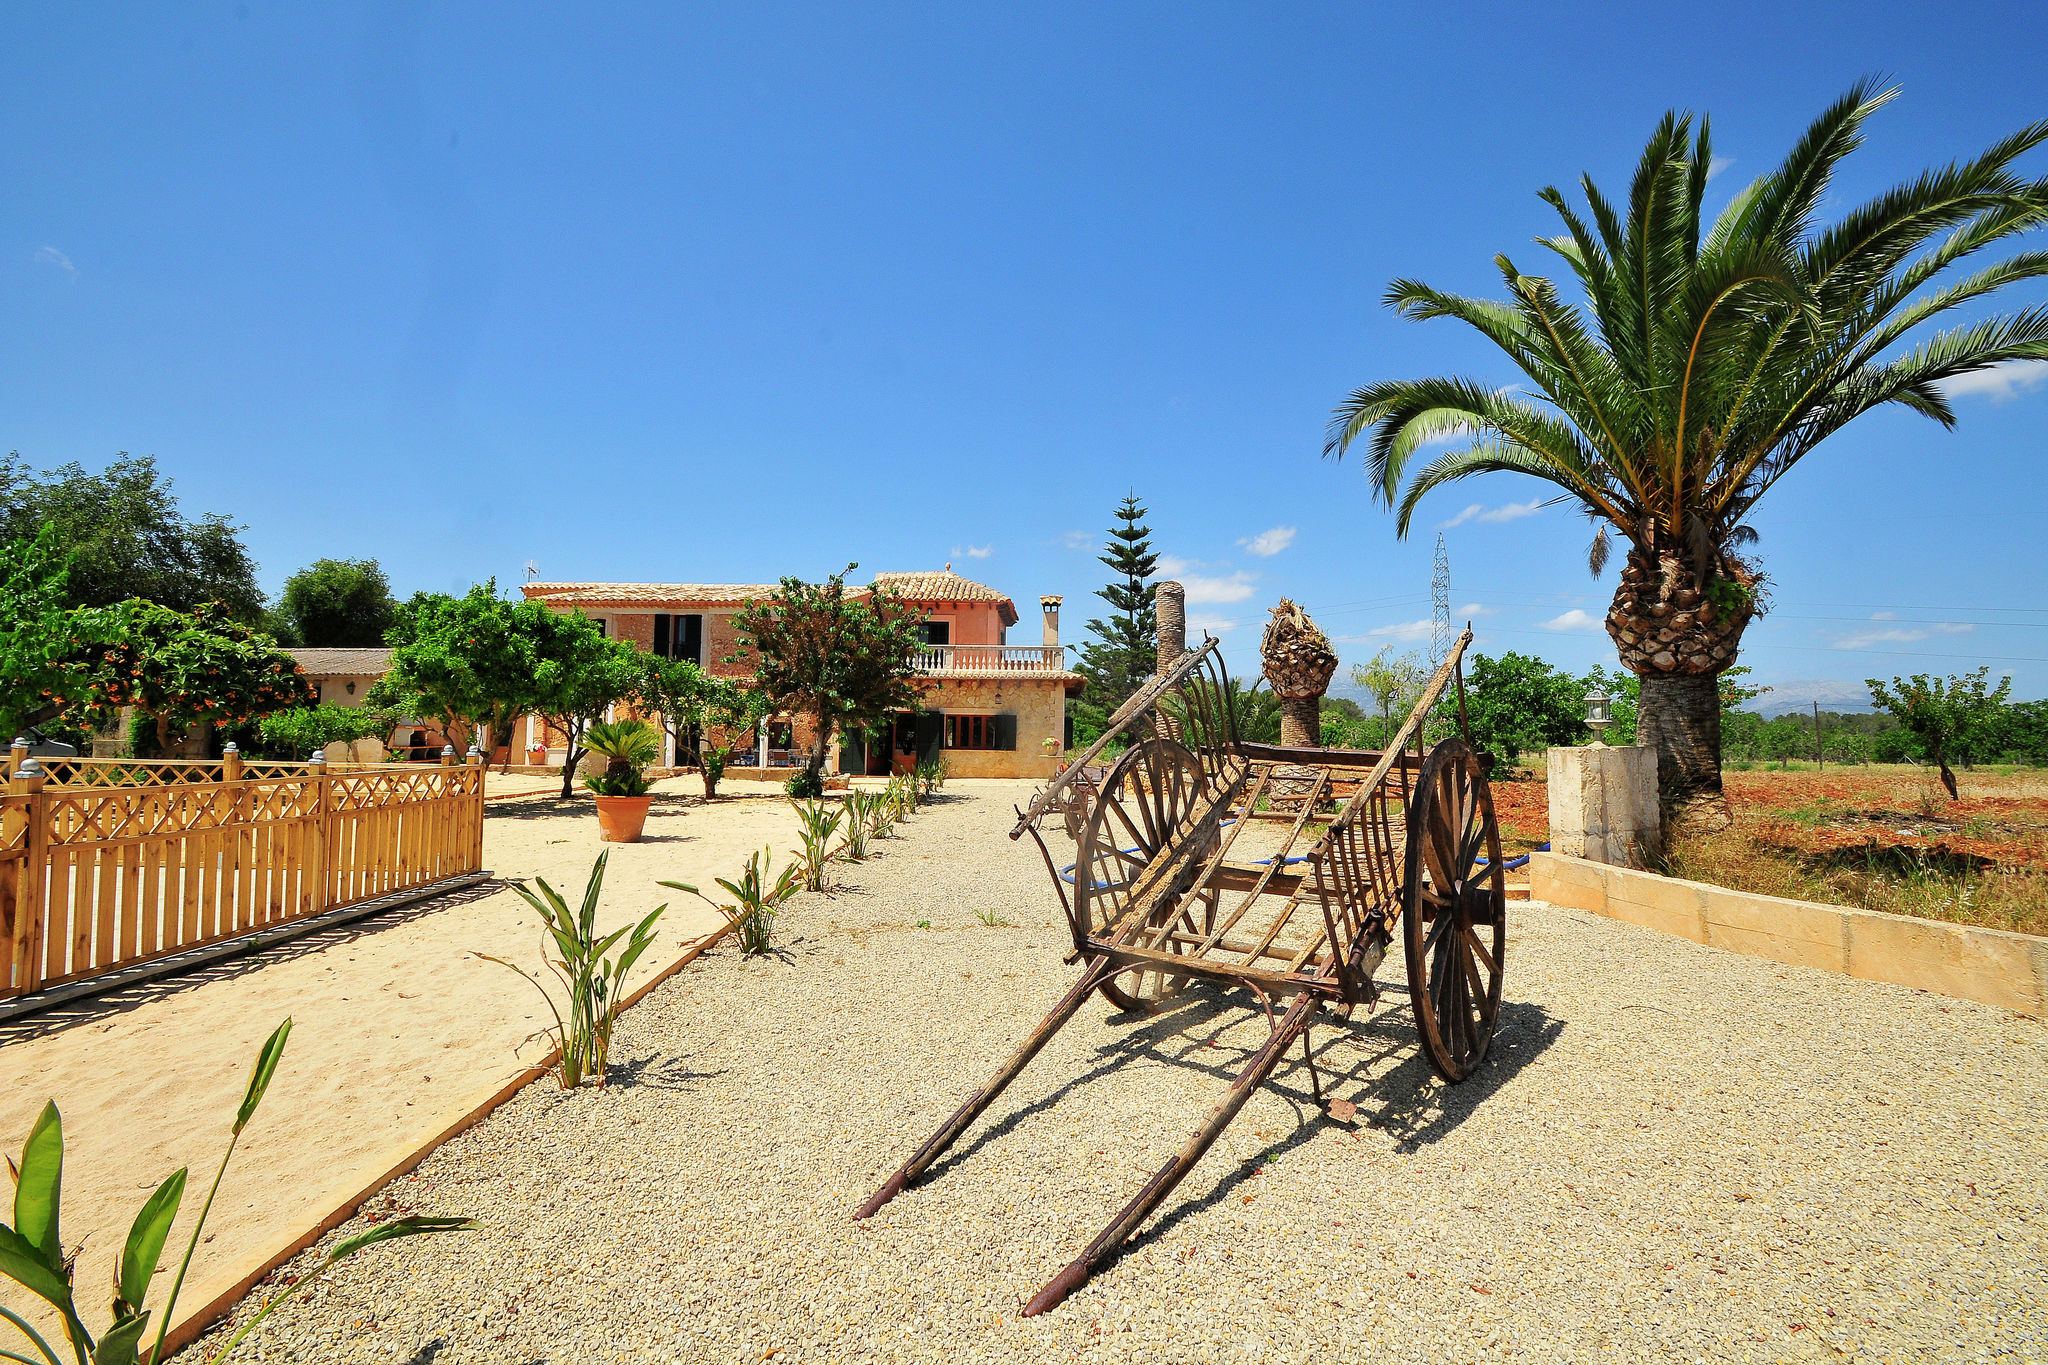 Villa authentique situé dans un cadre champêtre avec de belles vues